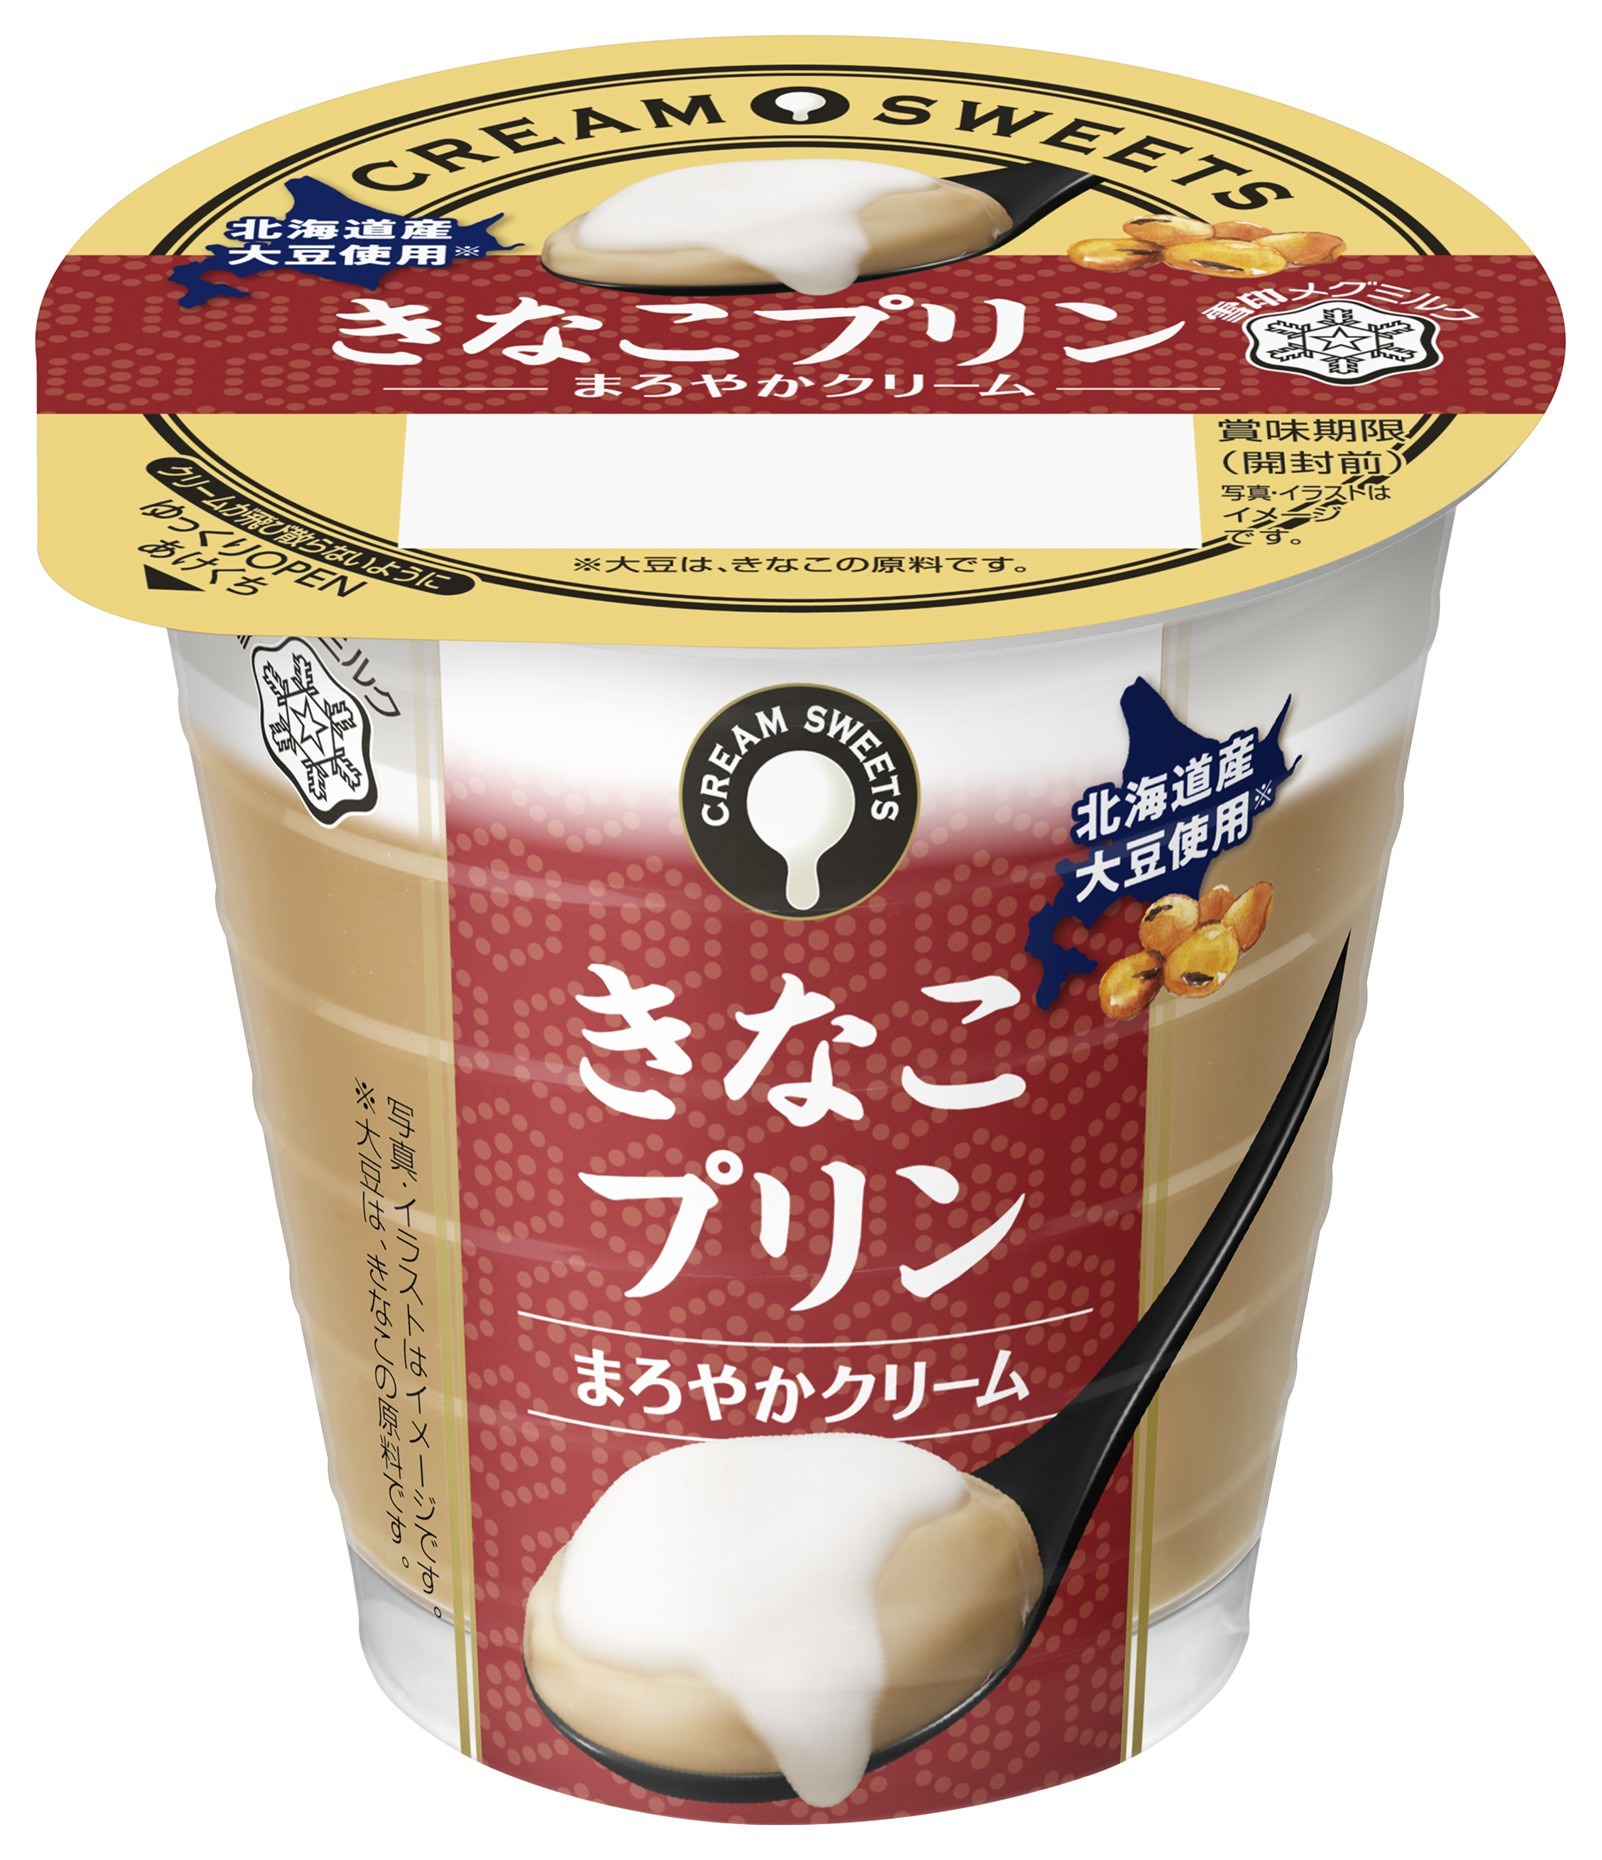 【雪印メグミルク】
『カクテルデザート ショコラオランジュ風味』

2019年10月8日（火）より全国にて新発売